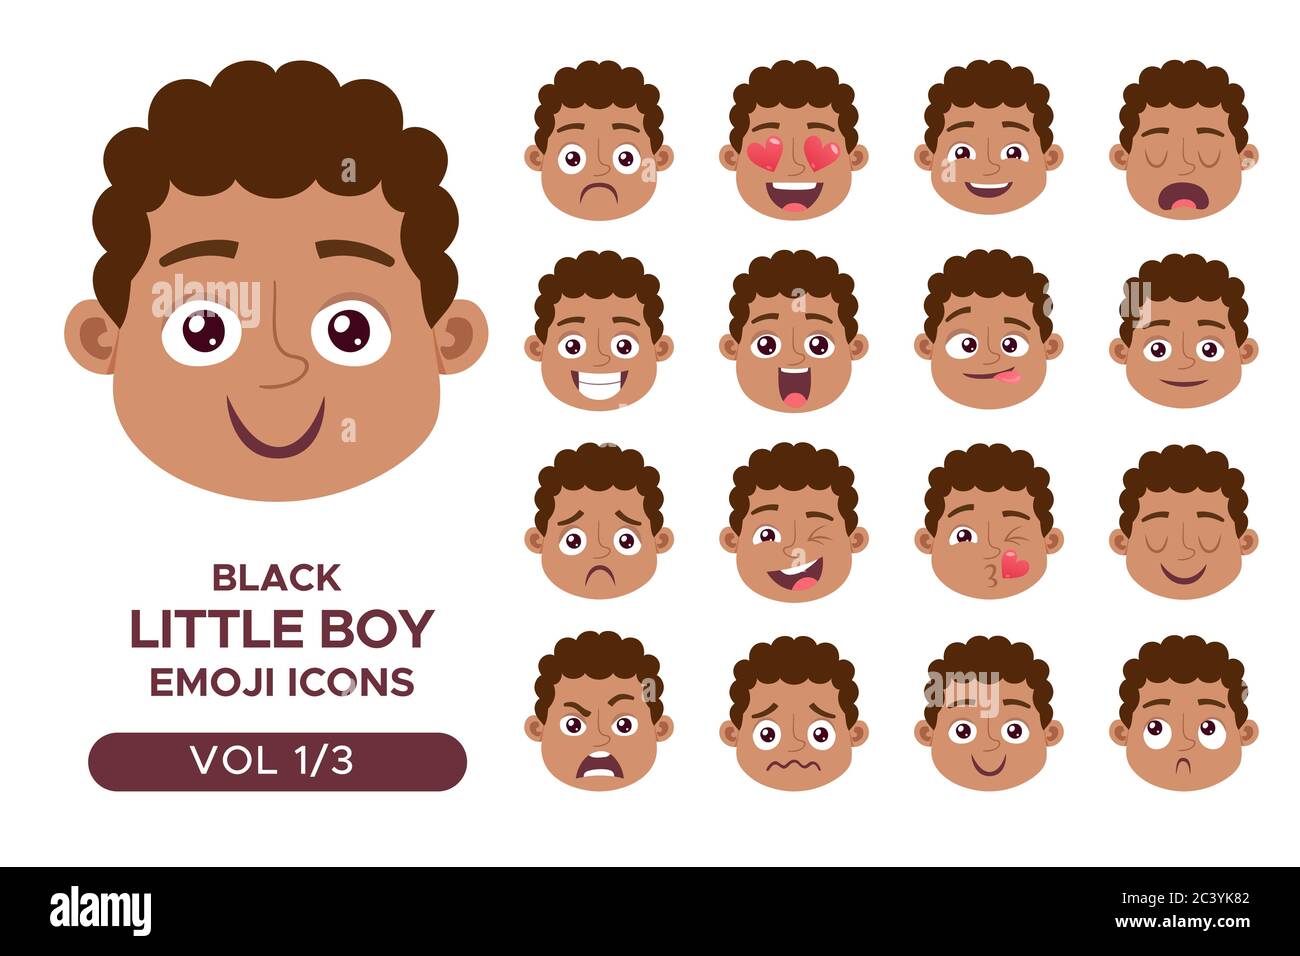 Ensemble d'avatar pour le visage d'un garçon. Personnage emoji petit garçon noir avec différentes expressions. Illustration vectorielle en style dessin animé. Ensemble 1 sur 3. Illustration de Vecteur